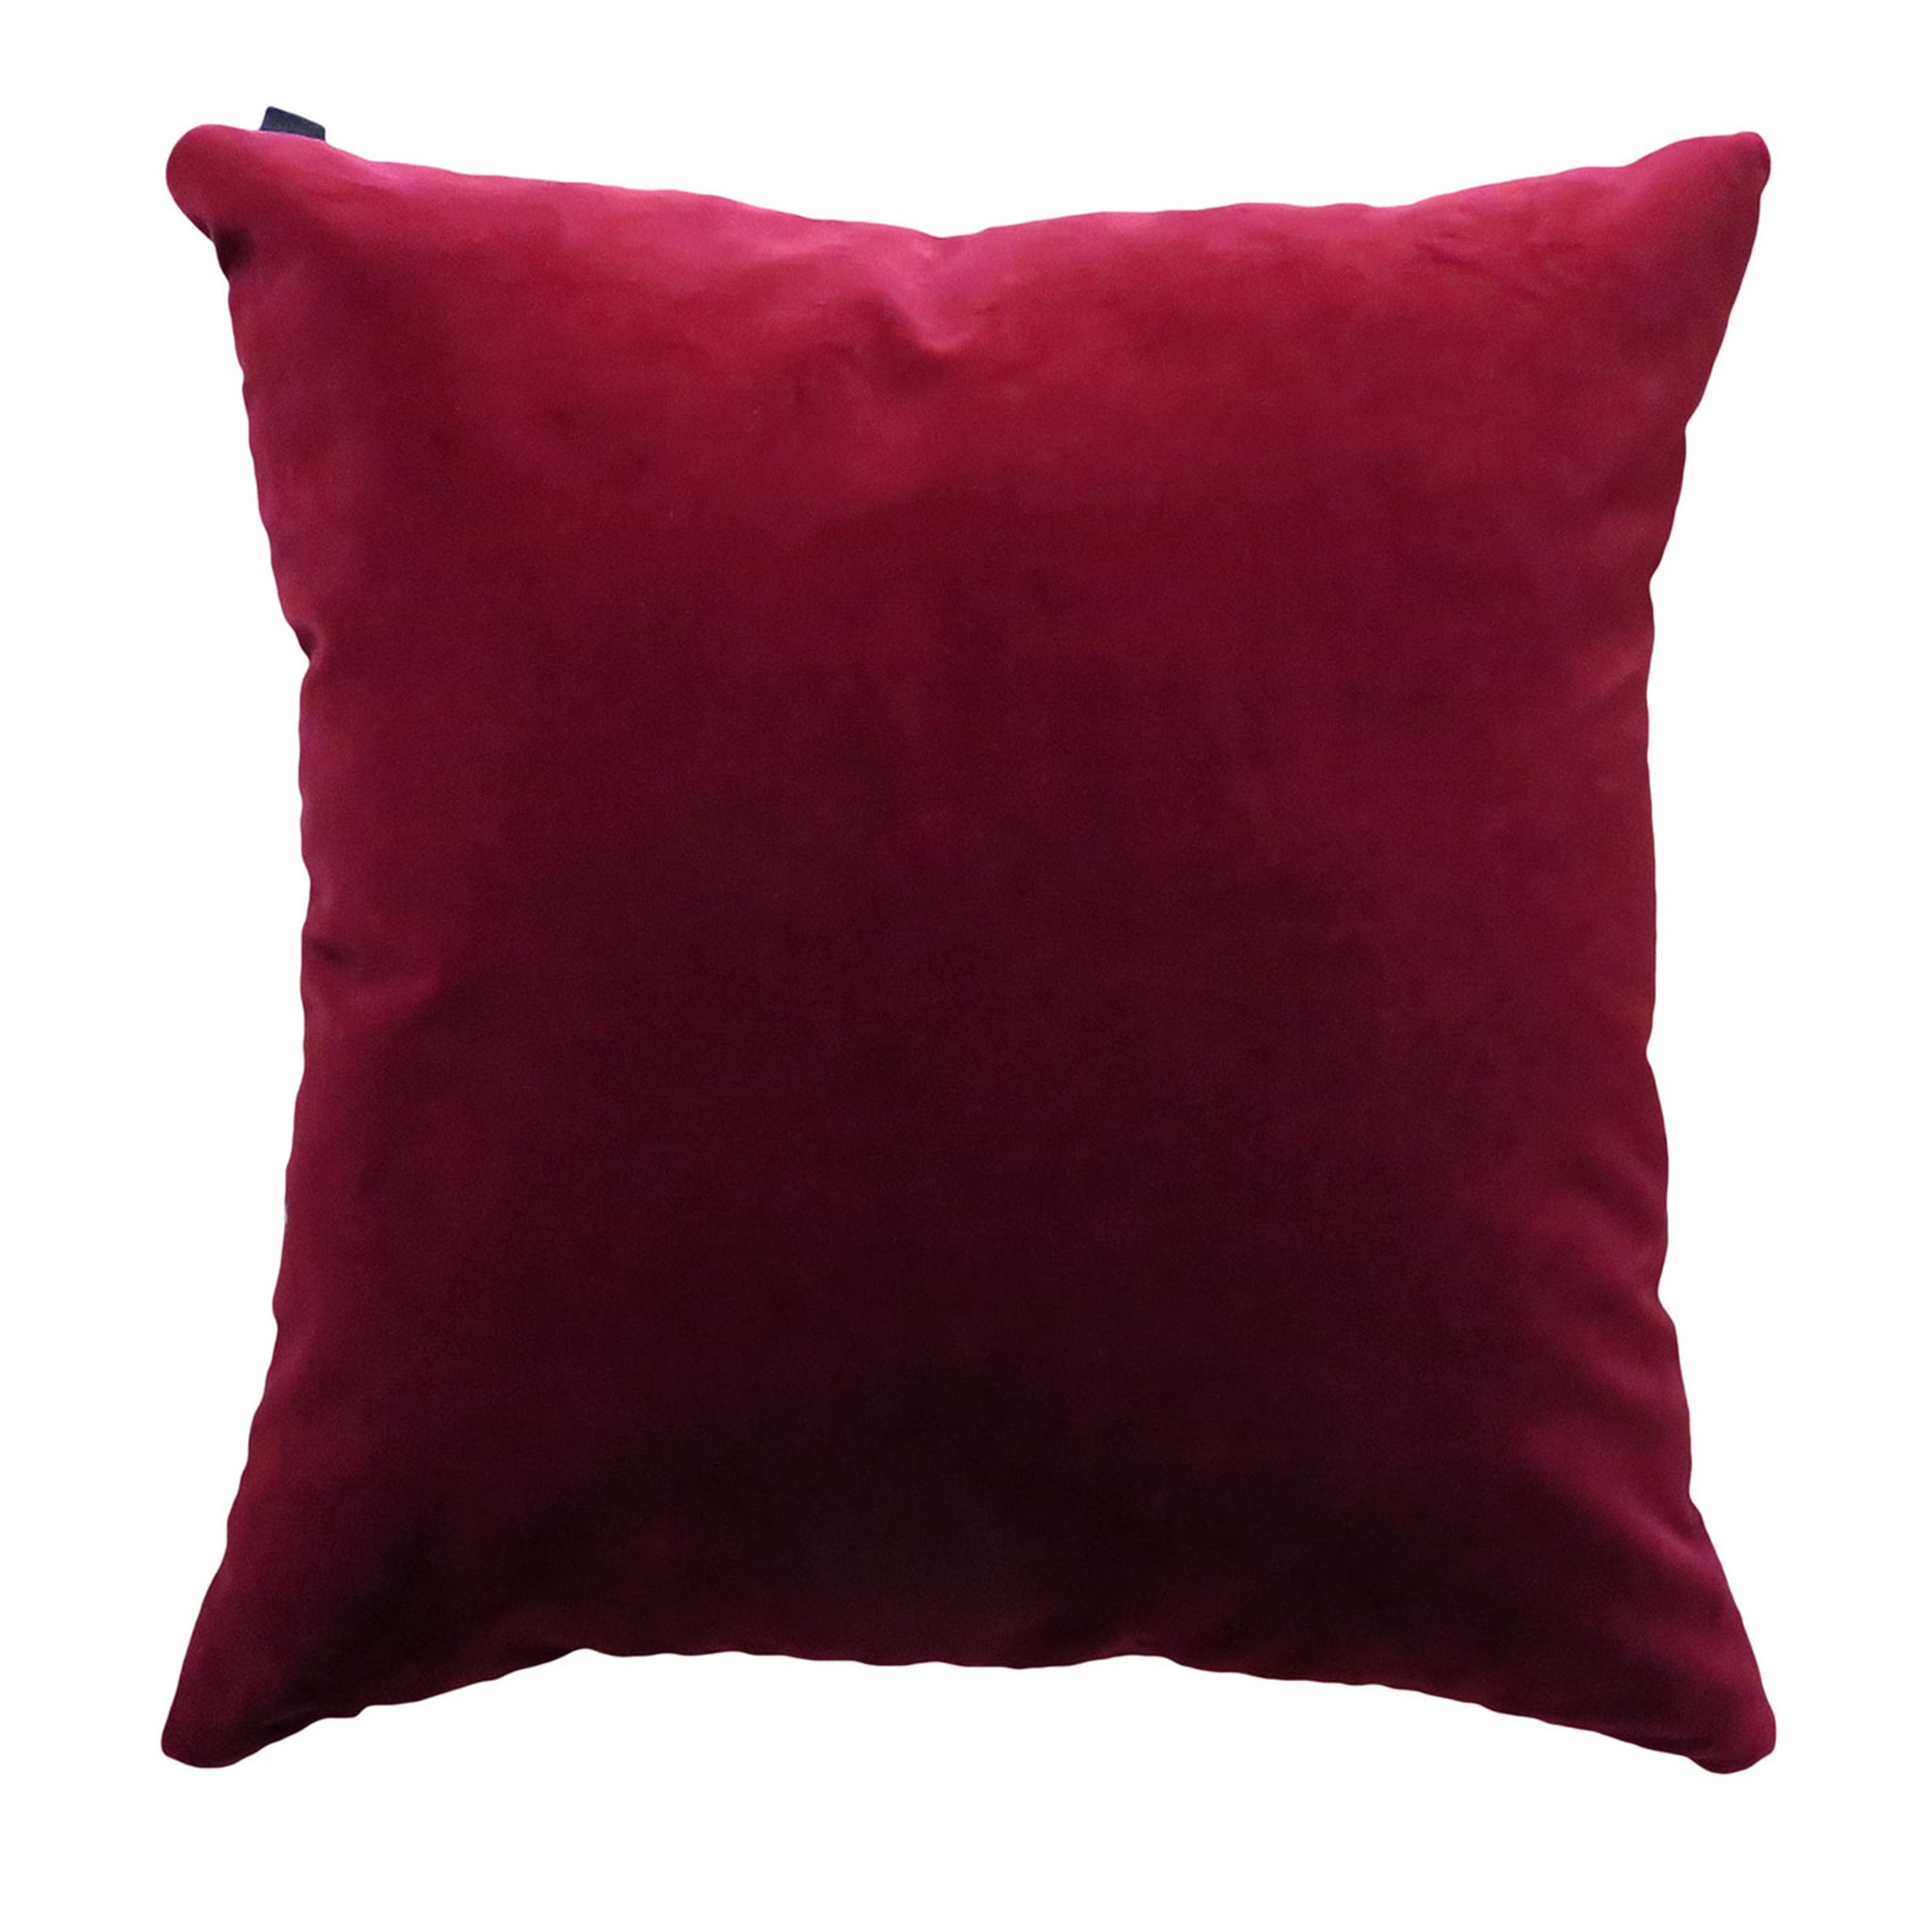 Burgundy Velvet Large Cushion Cover - Main view